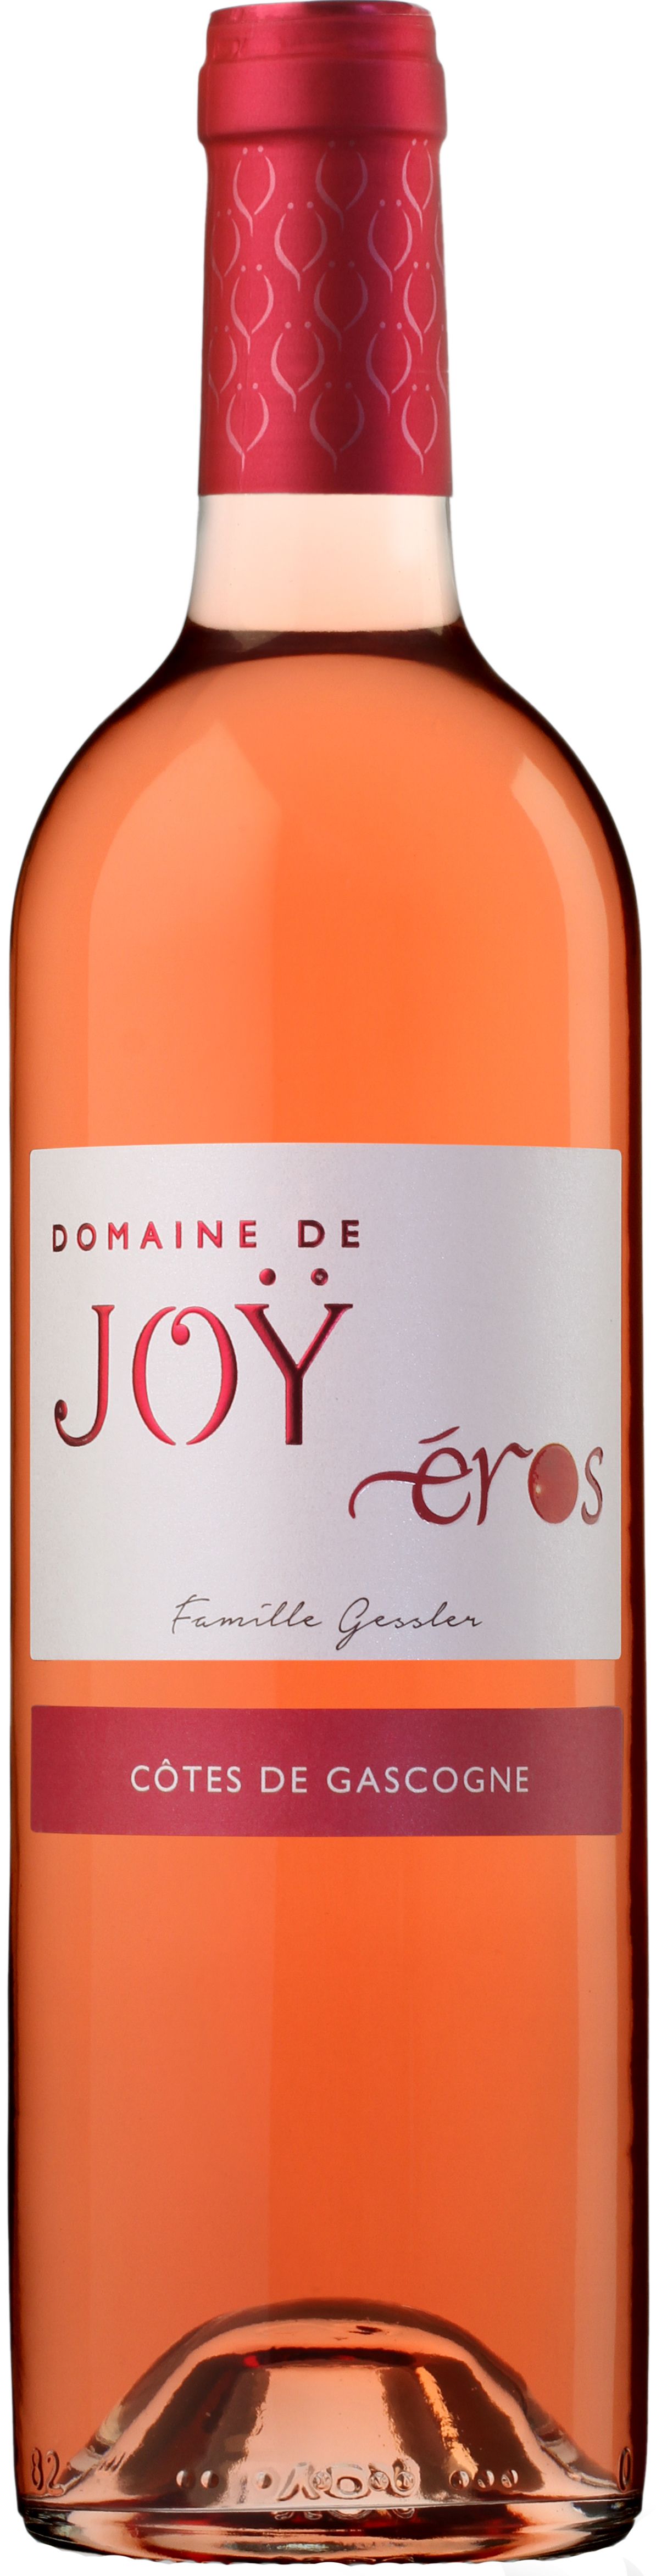 Кот де гасконь домен. Вино Cotes de Gascogne Rose. Domaine de Joy вино. Кот де Гасконь Розе. Вино Джой вино тинто.